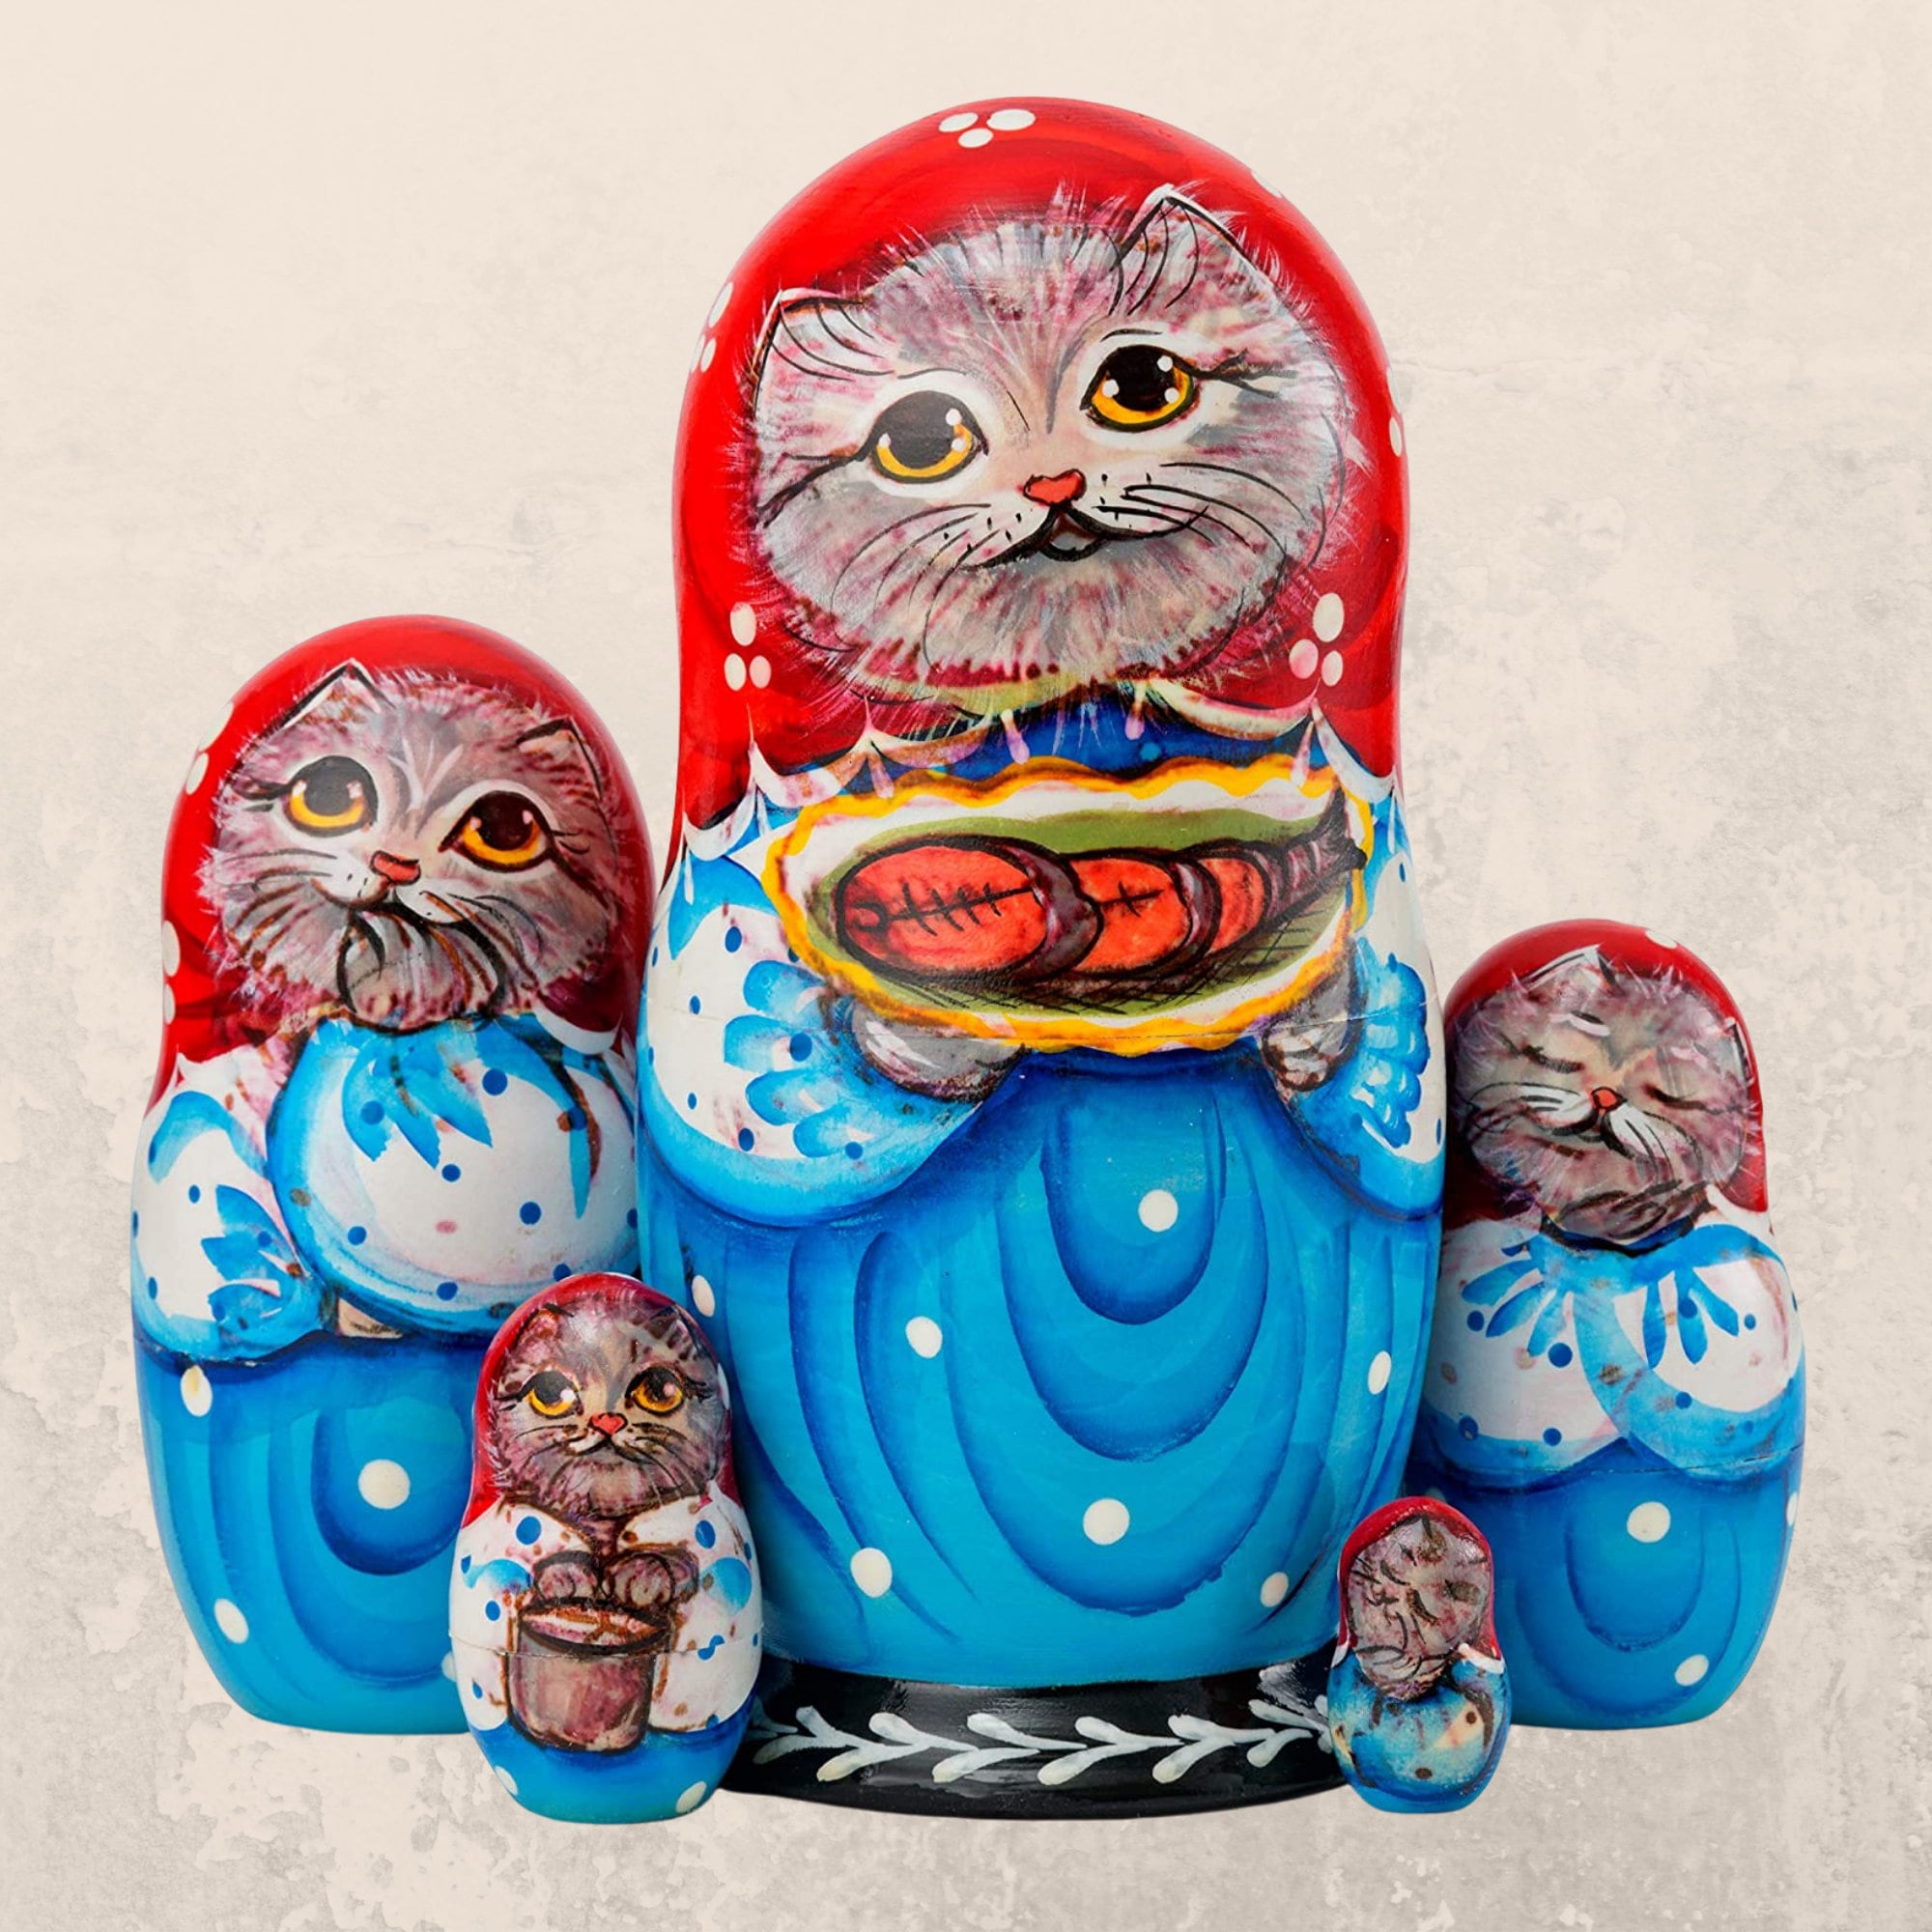 Wooden Animal/Women Russian Nesting Doll Kit Babushka Matryoshka Toy 5,6,7,10PCS 